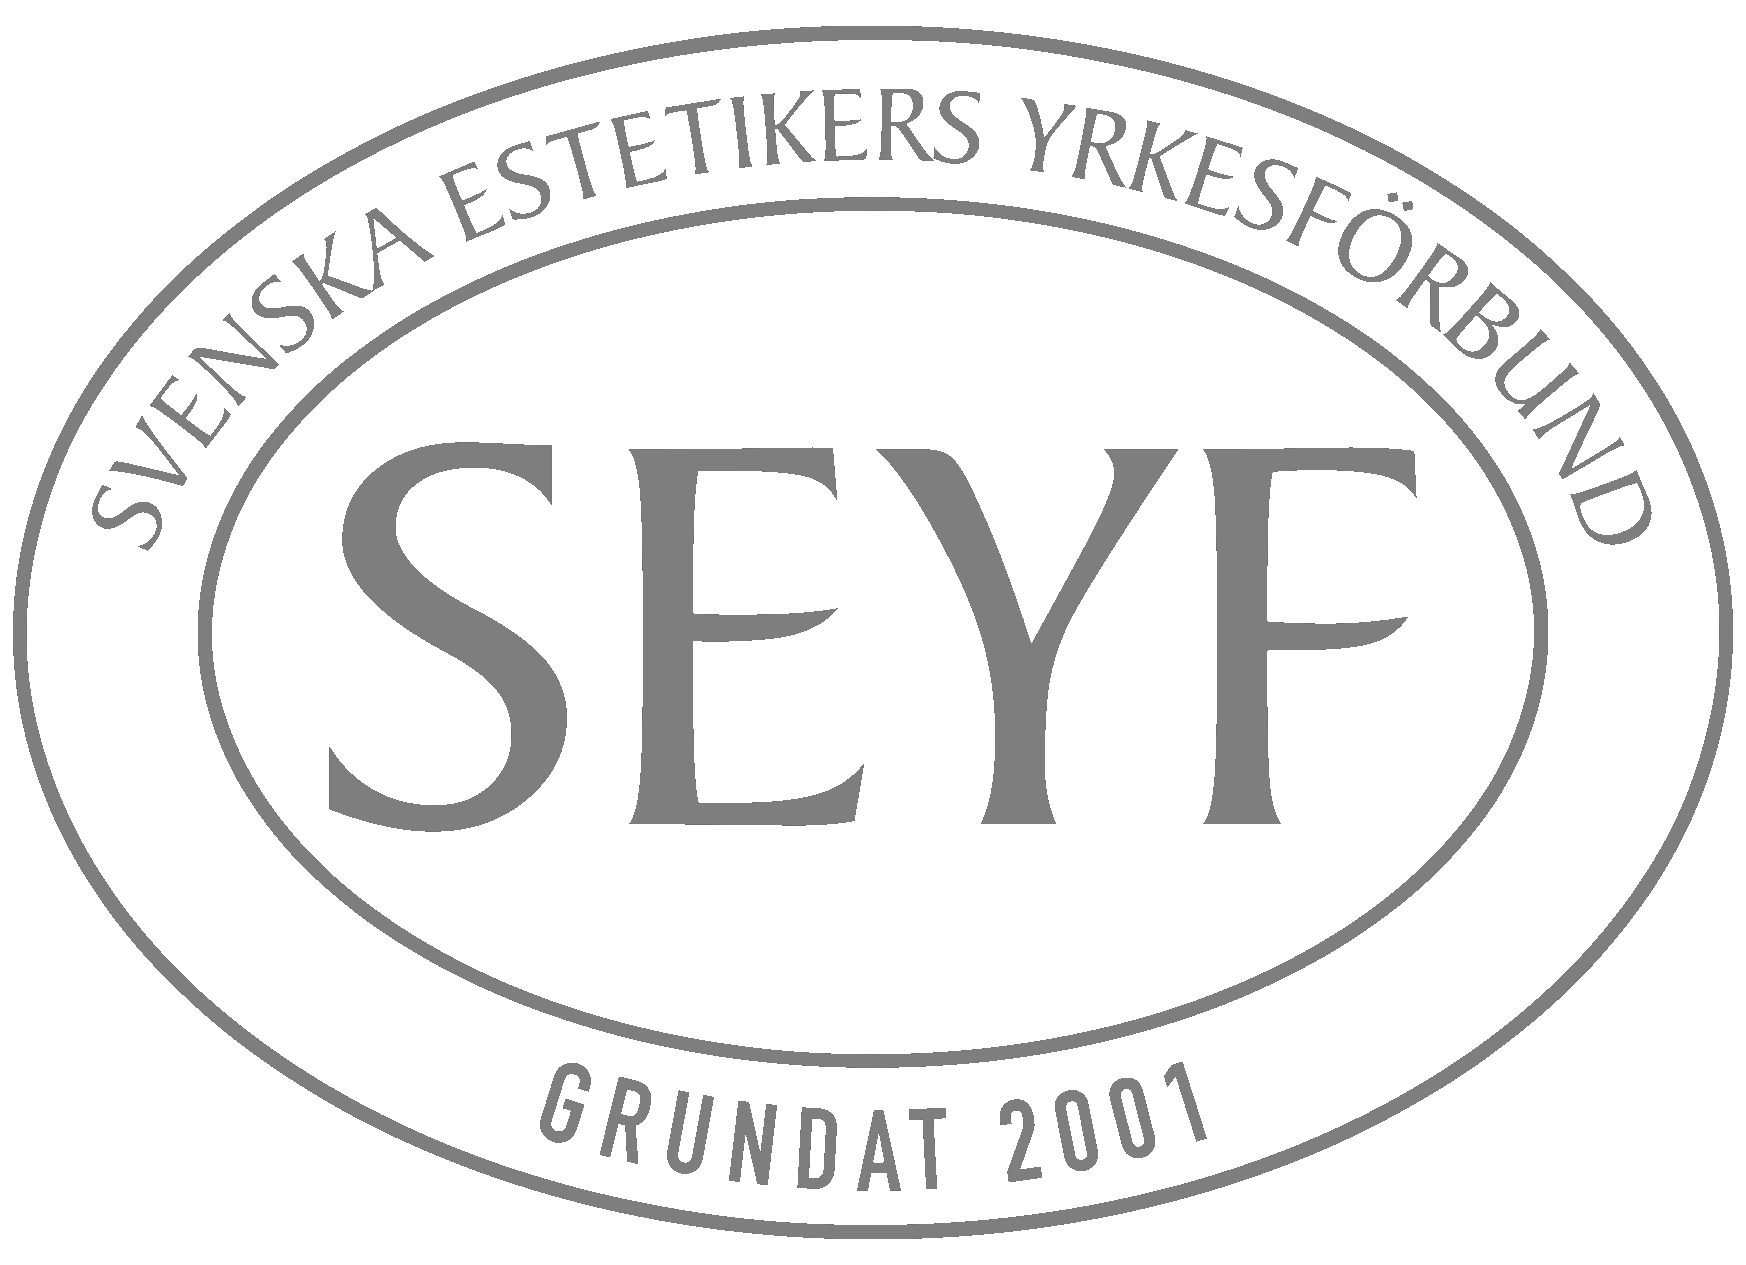 SEYF – Svenska estetikers yrkesförbund